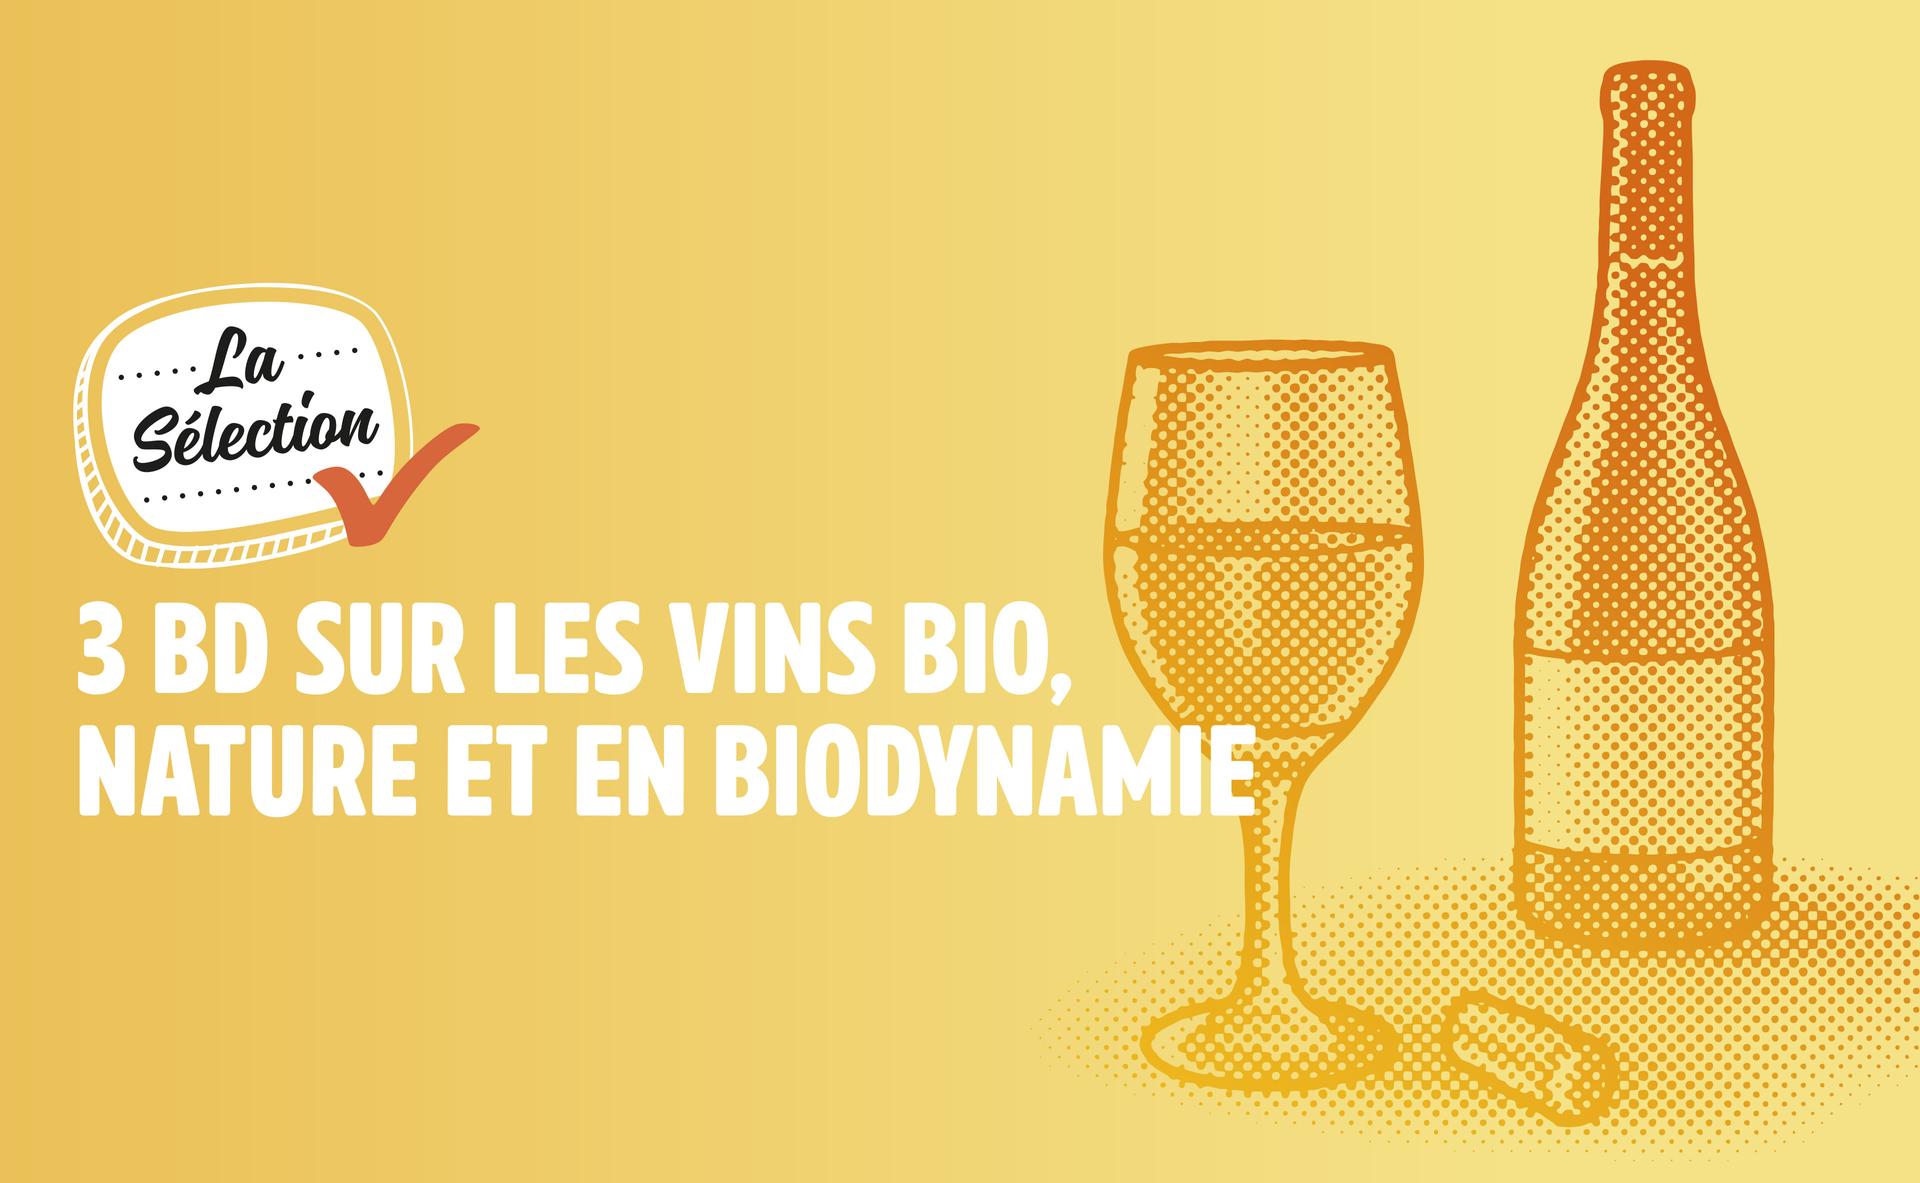 3 BD sur les vins bio, biodynamie et nature